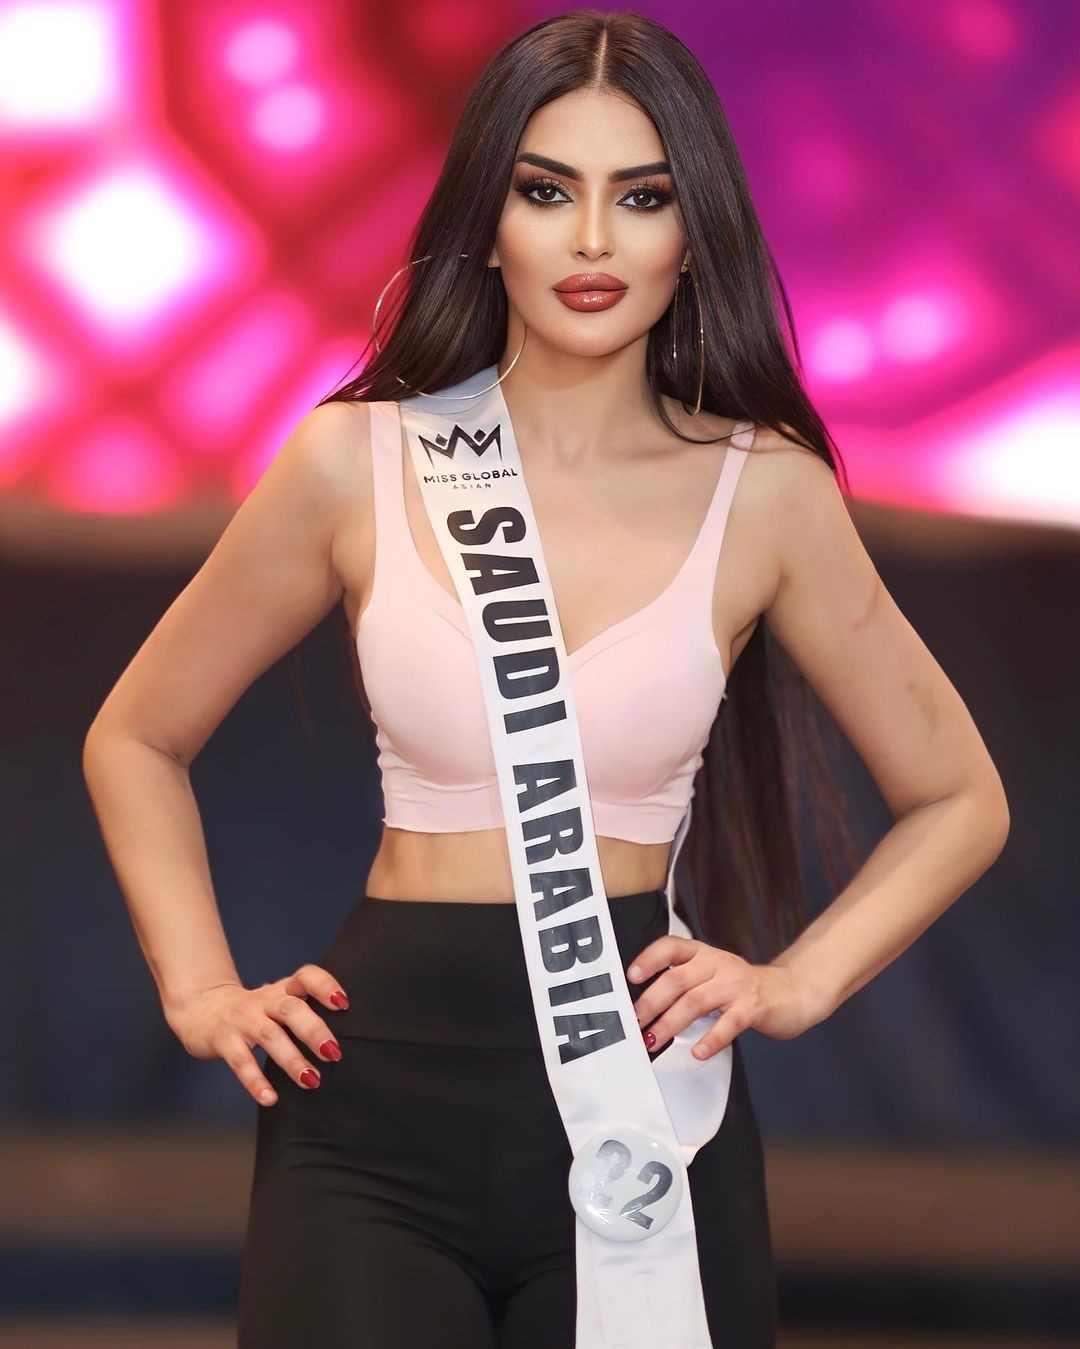 Nhan sắc gây tranh cãi của người đẹp Saudi Arabia đầu tiên thi Hoa hậu Hoàn vũ ảnh 13